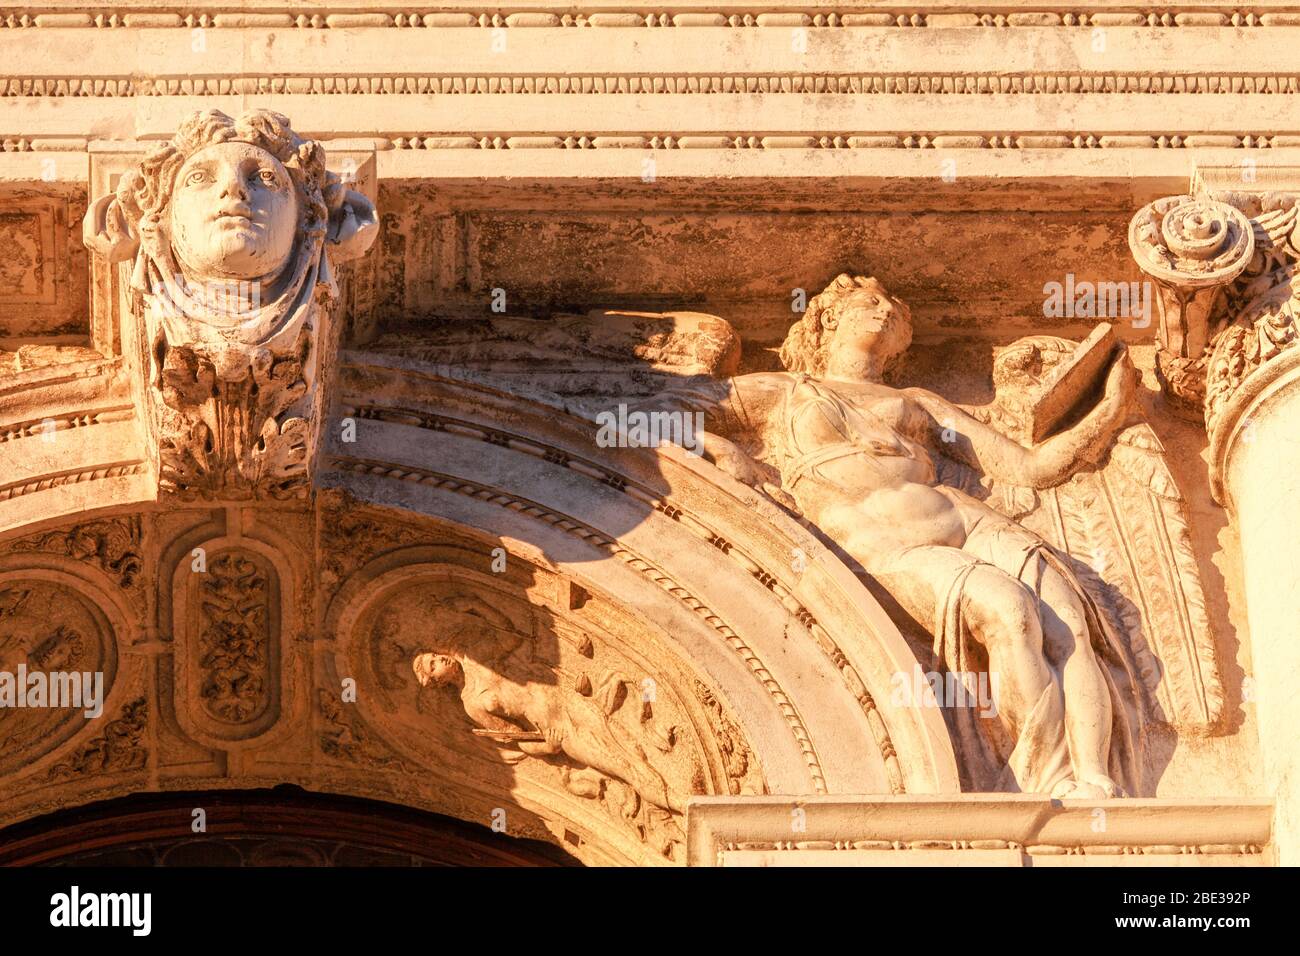 I-Venedig: Piazzetta San Marco: Fassade der Bibliotheca National Marciana, (Nationale Markusbibliothek, Bibliothek von San Marco, Libreria Marciana, B Foto de stock